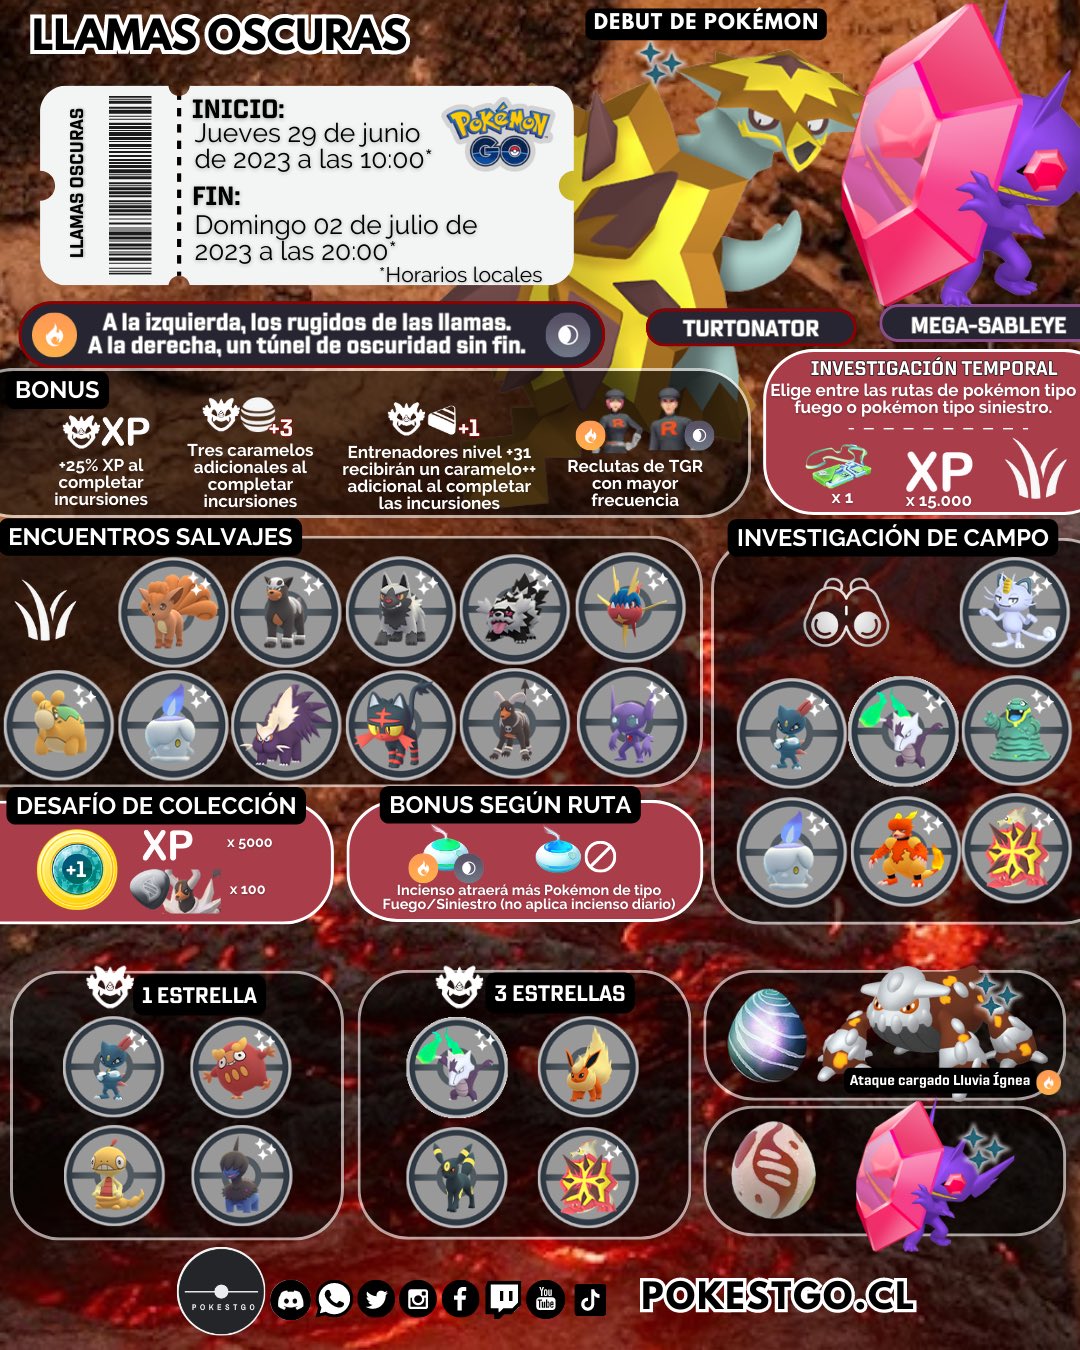 LLamas oscuras de Pokémon GO: Guía, tareas, rutas y más